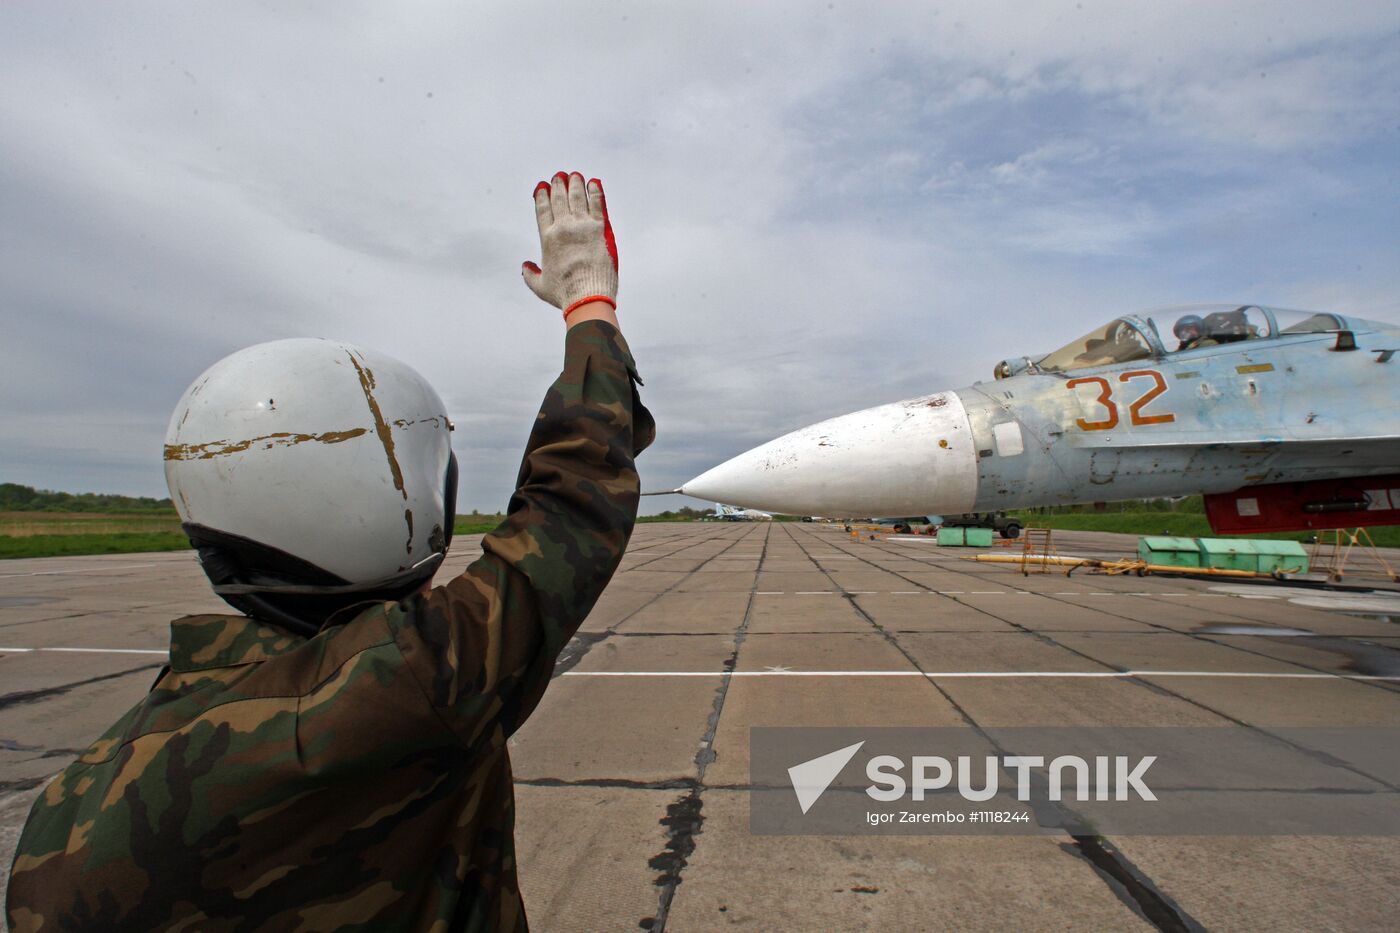 Sukhoi 27 jets in training flights